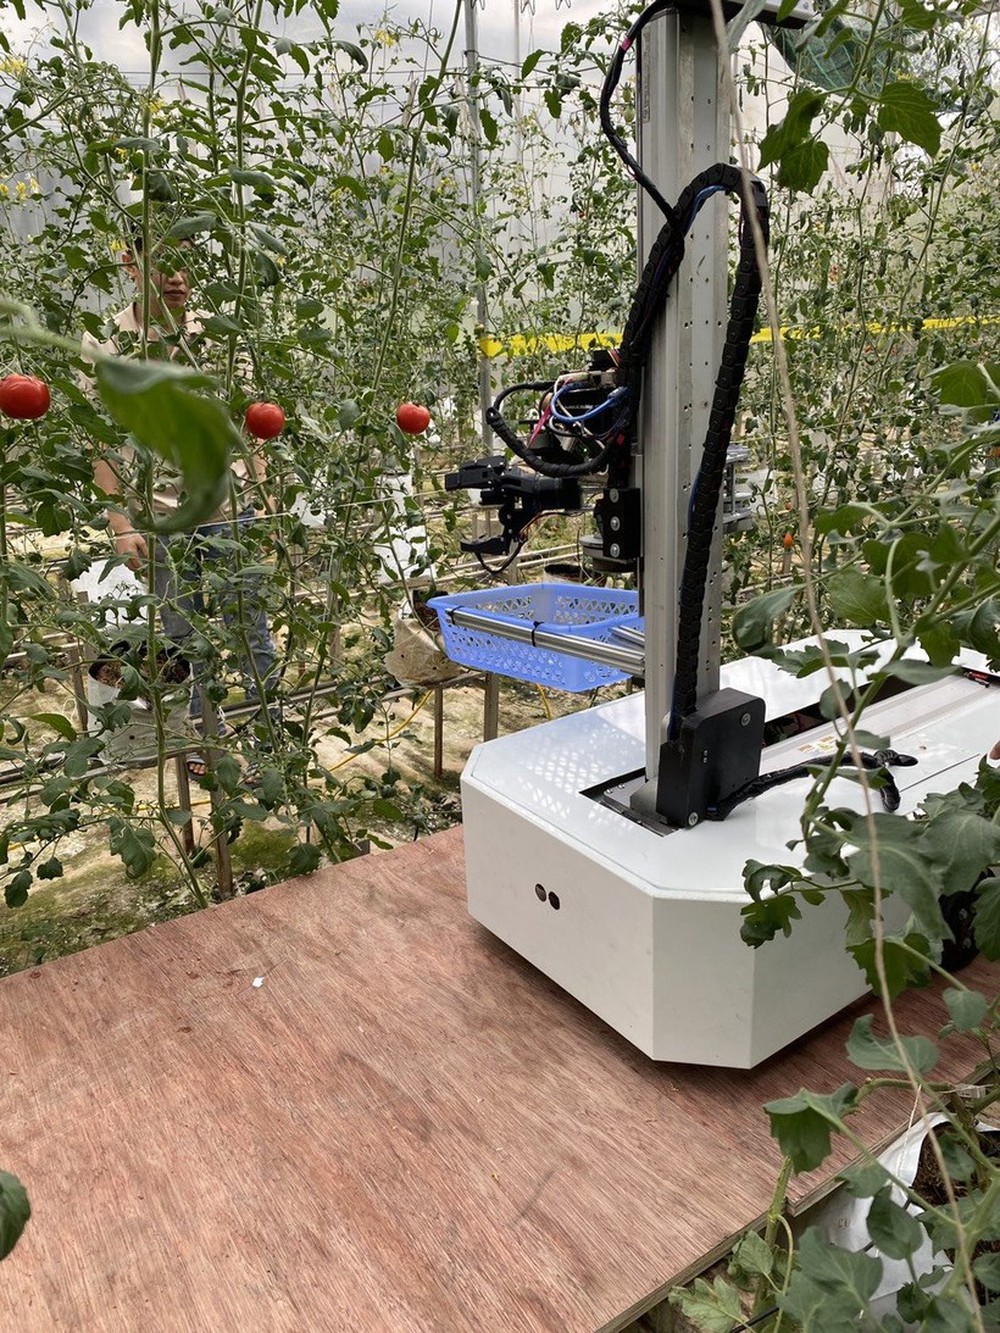 Tiến sĩ ấp ủ ra lò robot hái trái cây tự động - Ảnh 1.